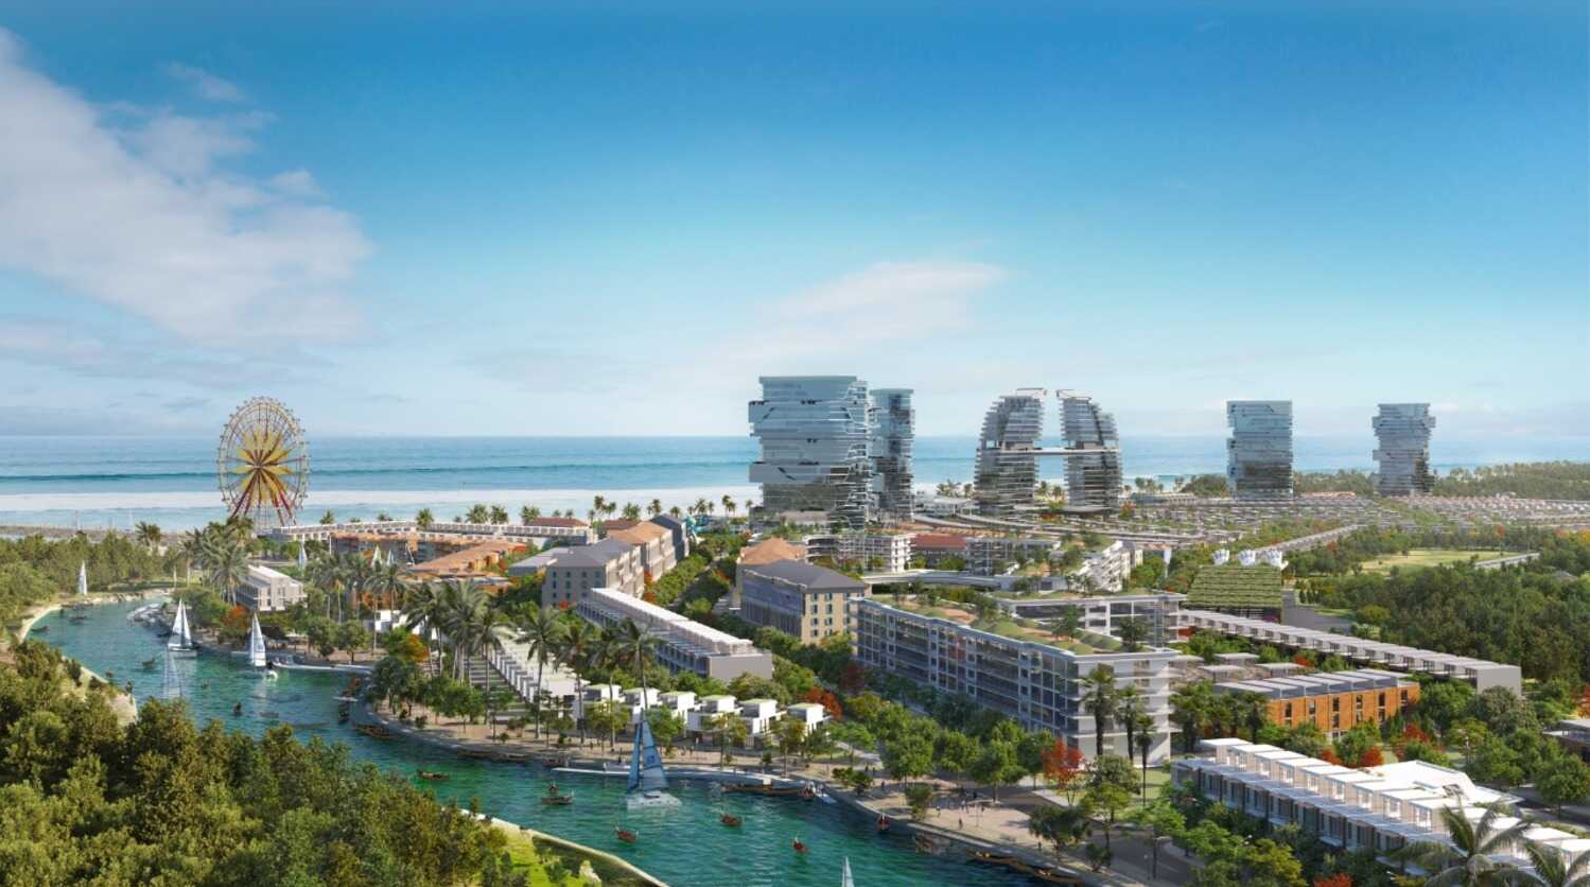  Trung tâm thương mại dịch vụ giải trí và du lịch biển Venezia Beach Bình Châu Bình Thuận 